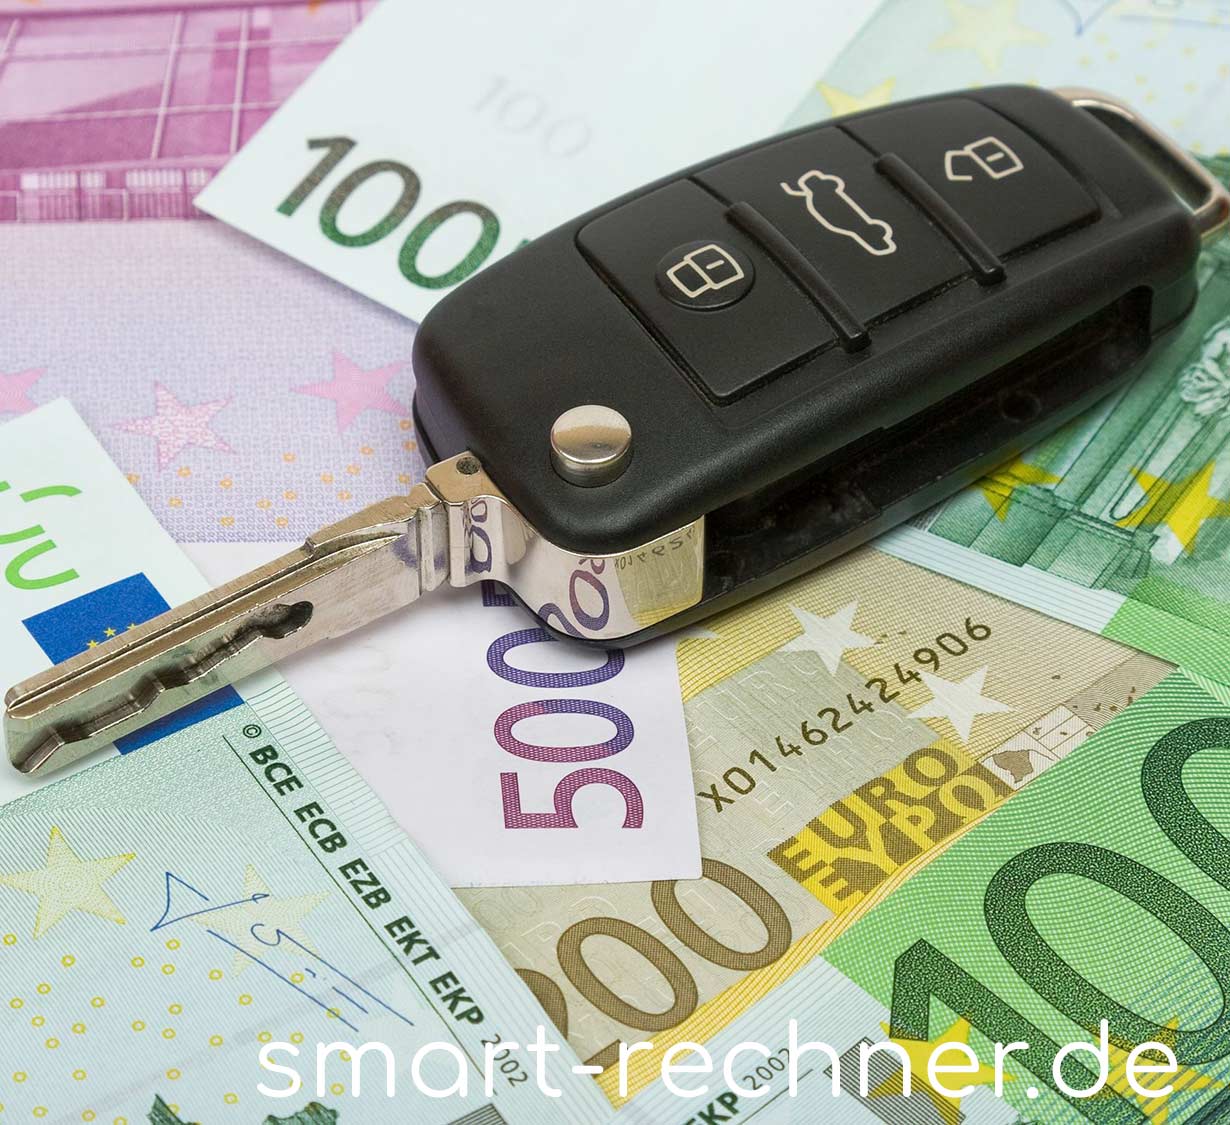 Fabelhafte Kfz Steuer Diesel Euro 4 Berechnen Bild ...